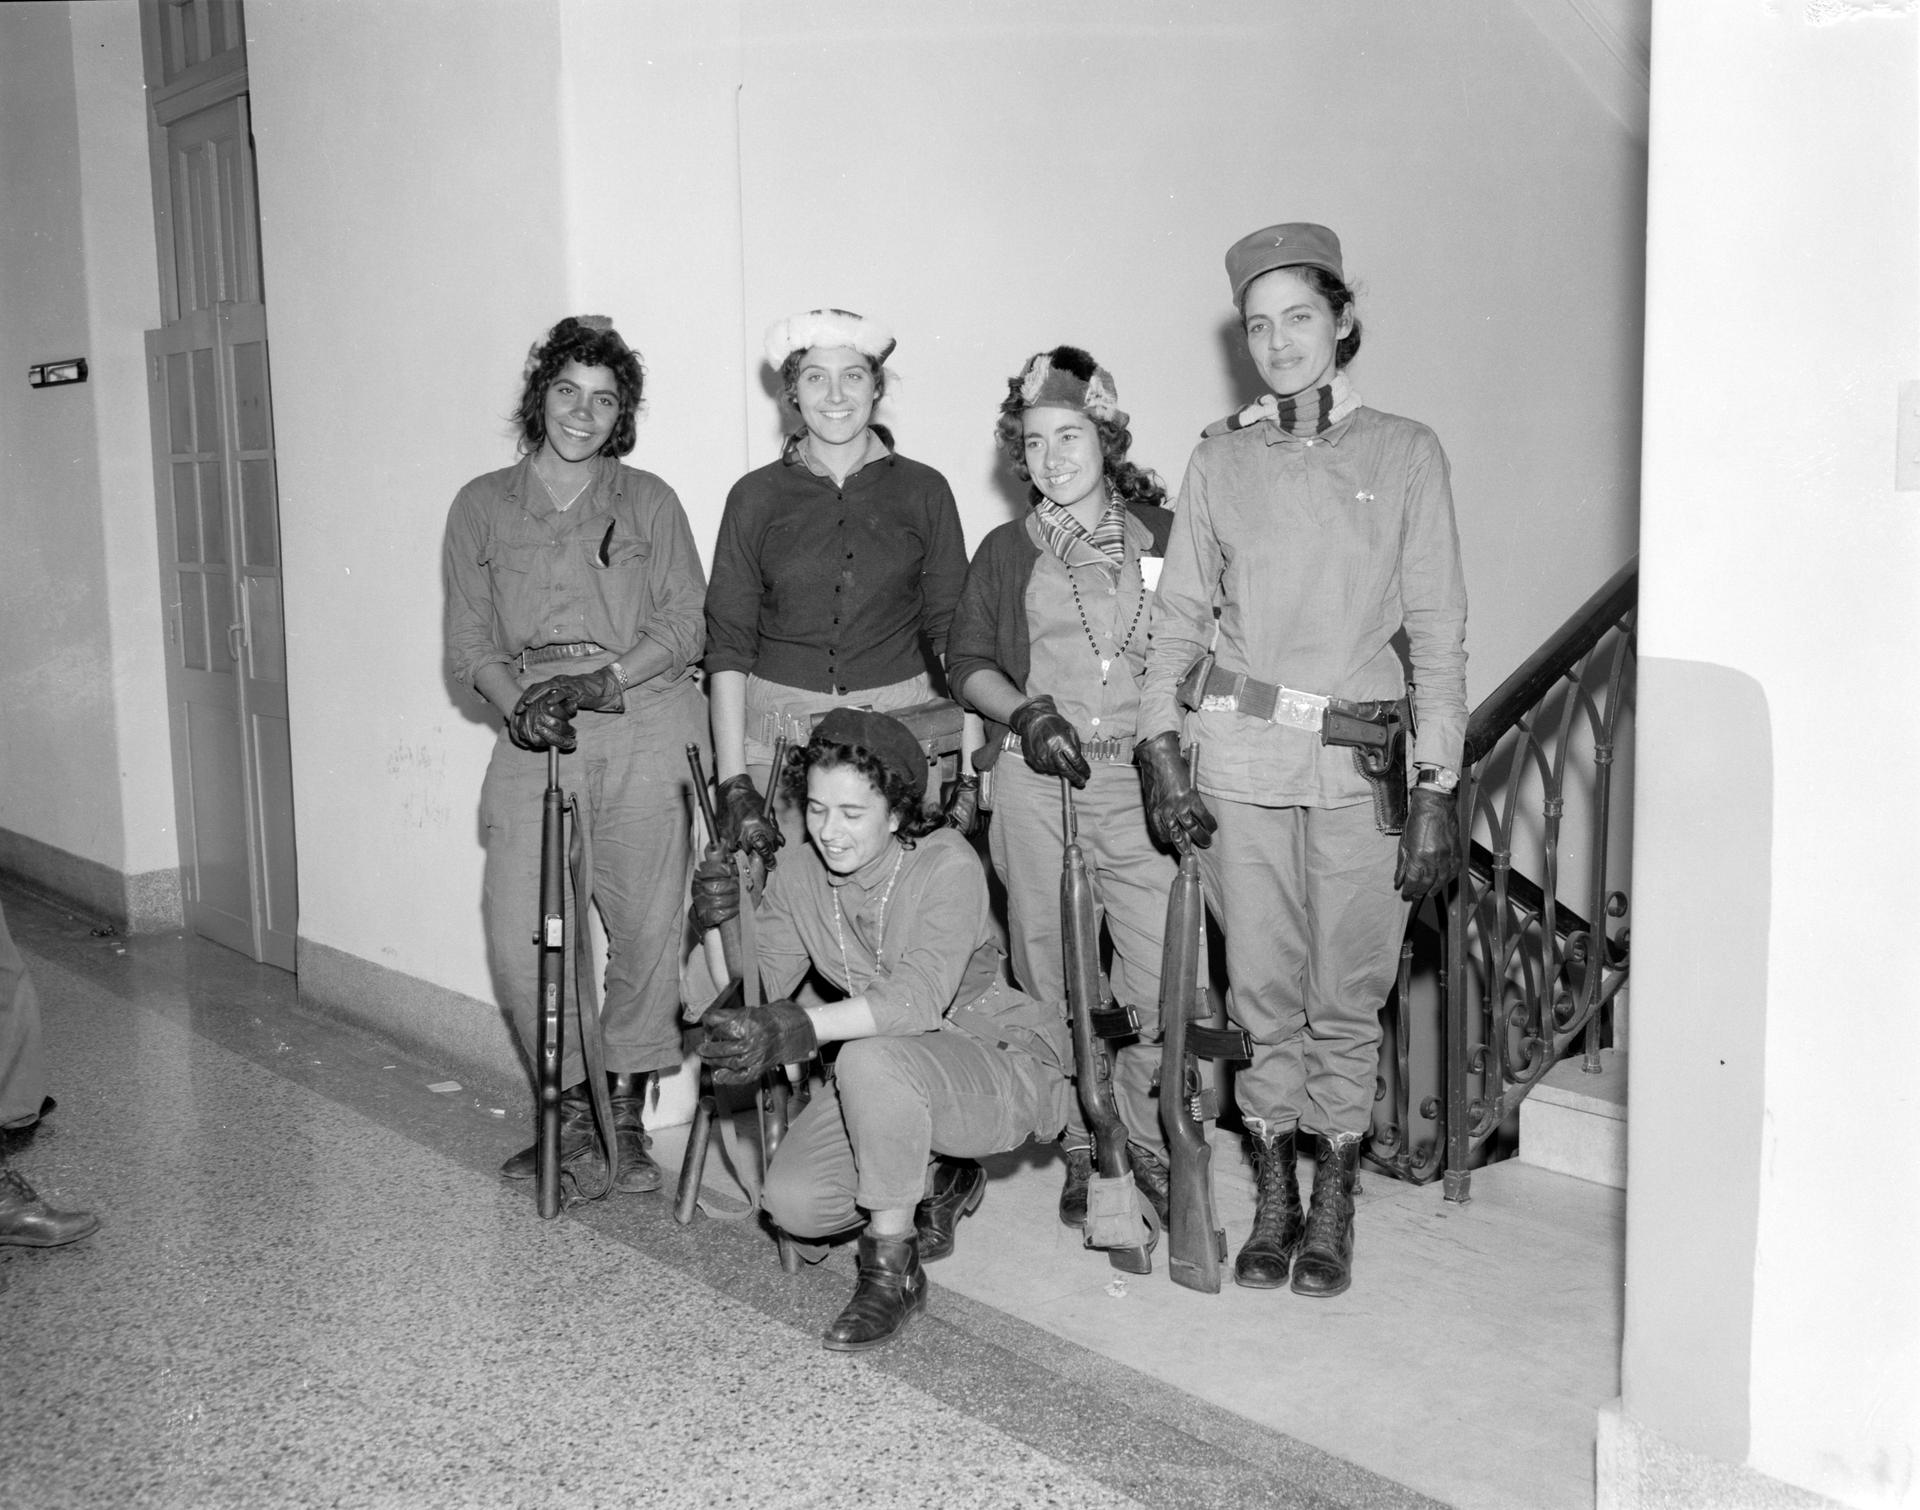 January 1959 - Havana, Cuba - Standing (left to right) Lillia Rielo, Adabella Apointe, Tete Puebla, Isabel Rielo. Kneeling is Olga Guevara (no relation to 